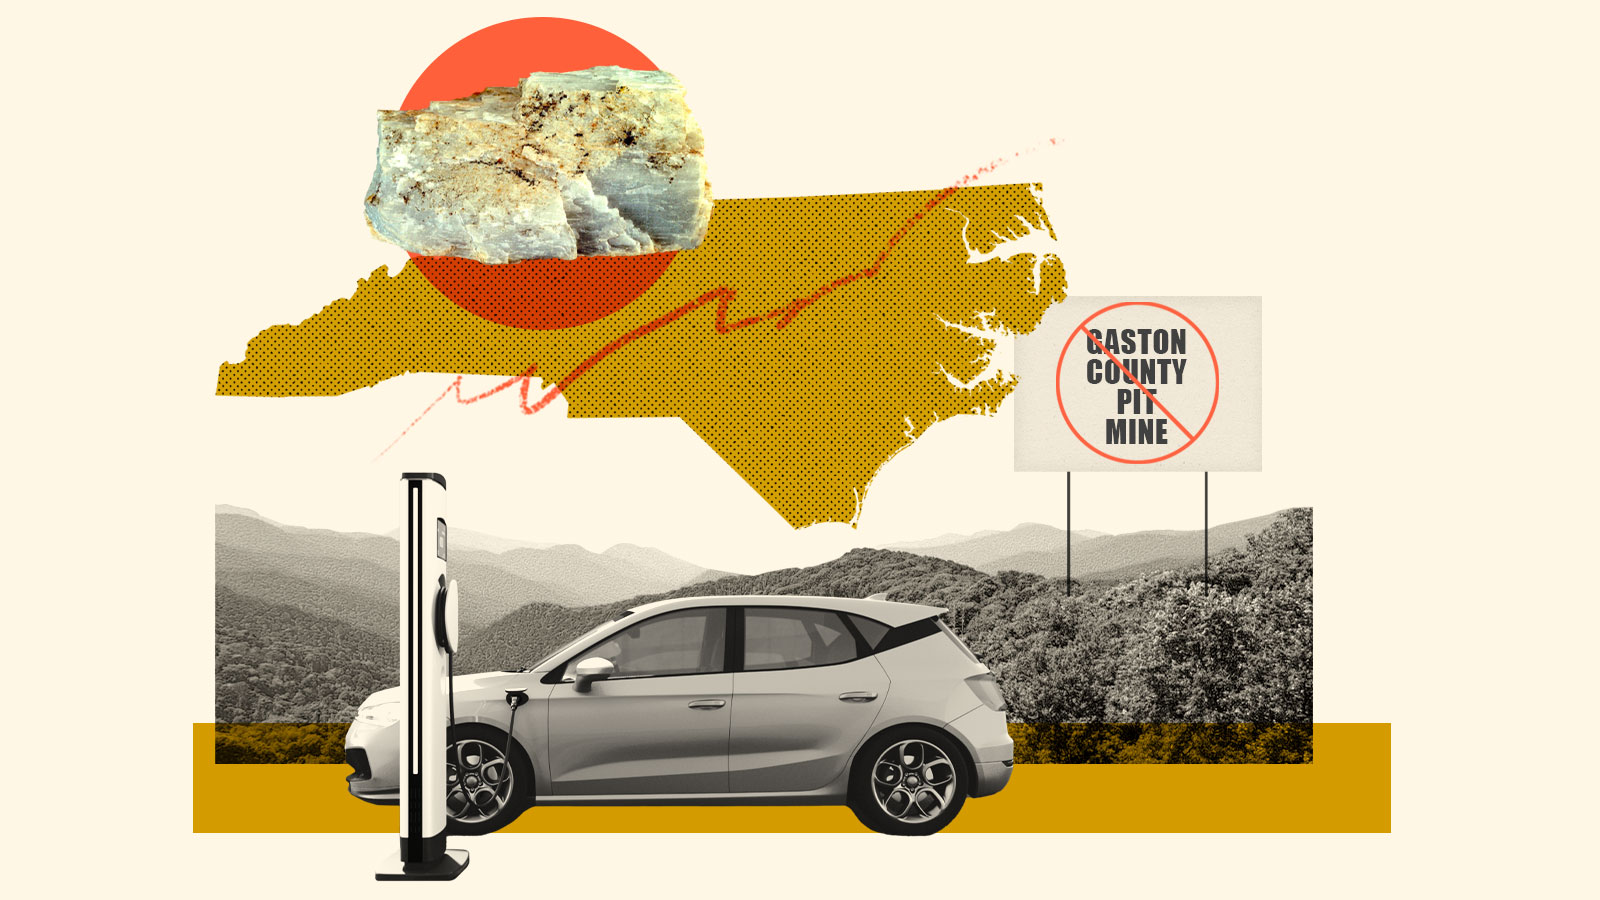 Colagem: um carro elétrico ligado a uma estação de carregamento, montanhas, uma silhueta da Carolina do Norte, um pedaço de minério de lítio e uma placa com as palavras